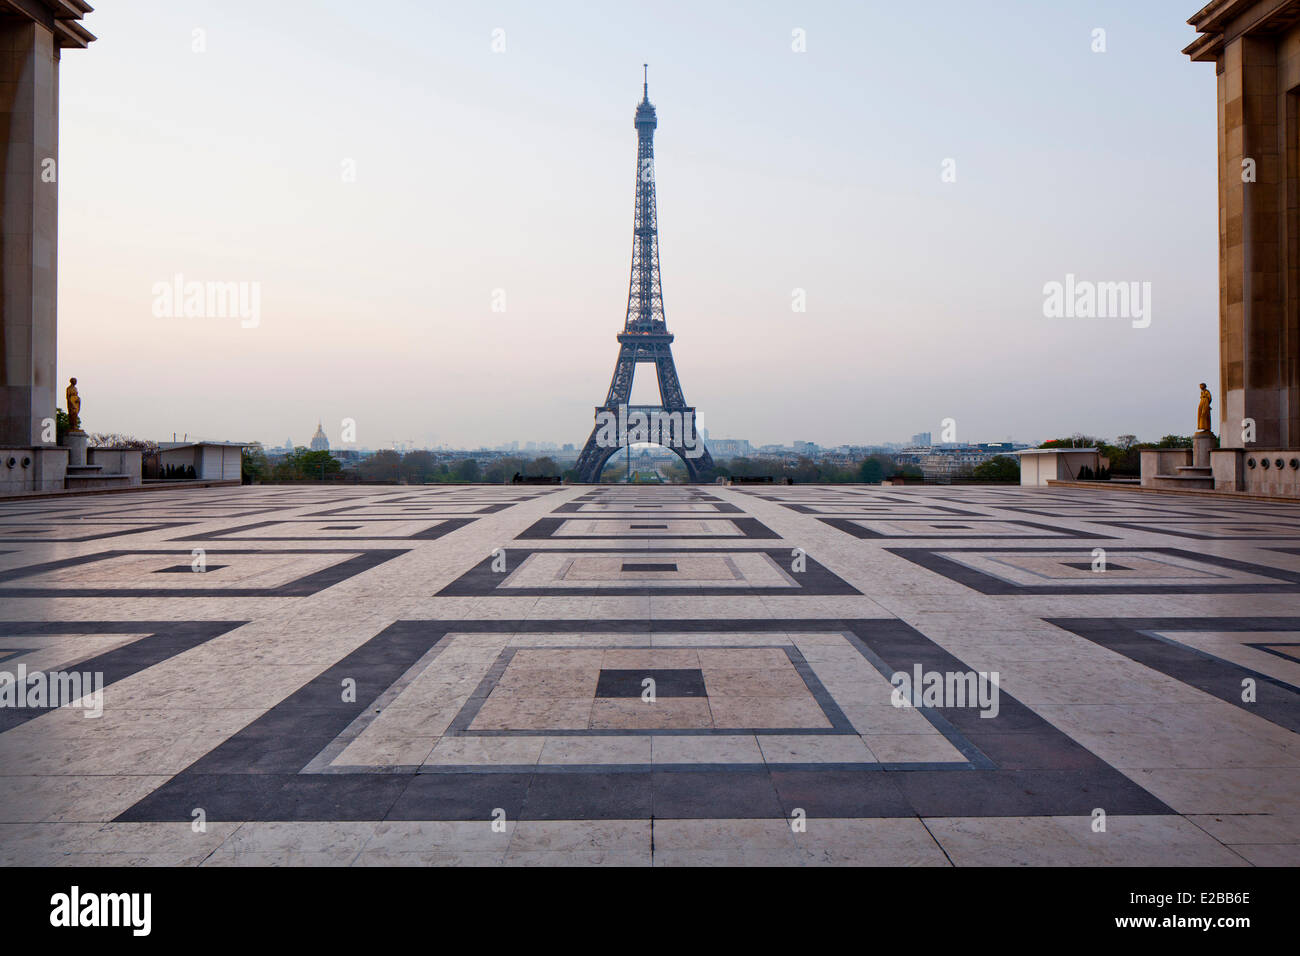 France, Paris, Place du Trocadero, Parvis des Droits de l'Homme and Eiffel Tower Stock Photo